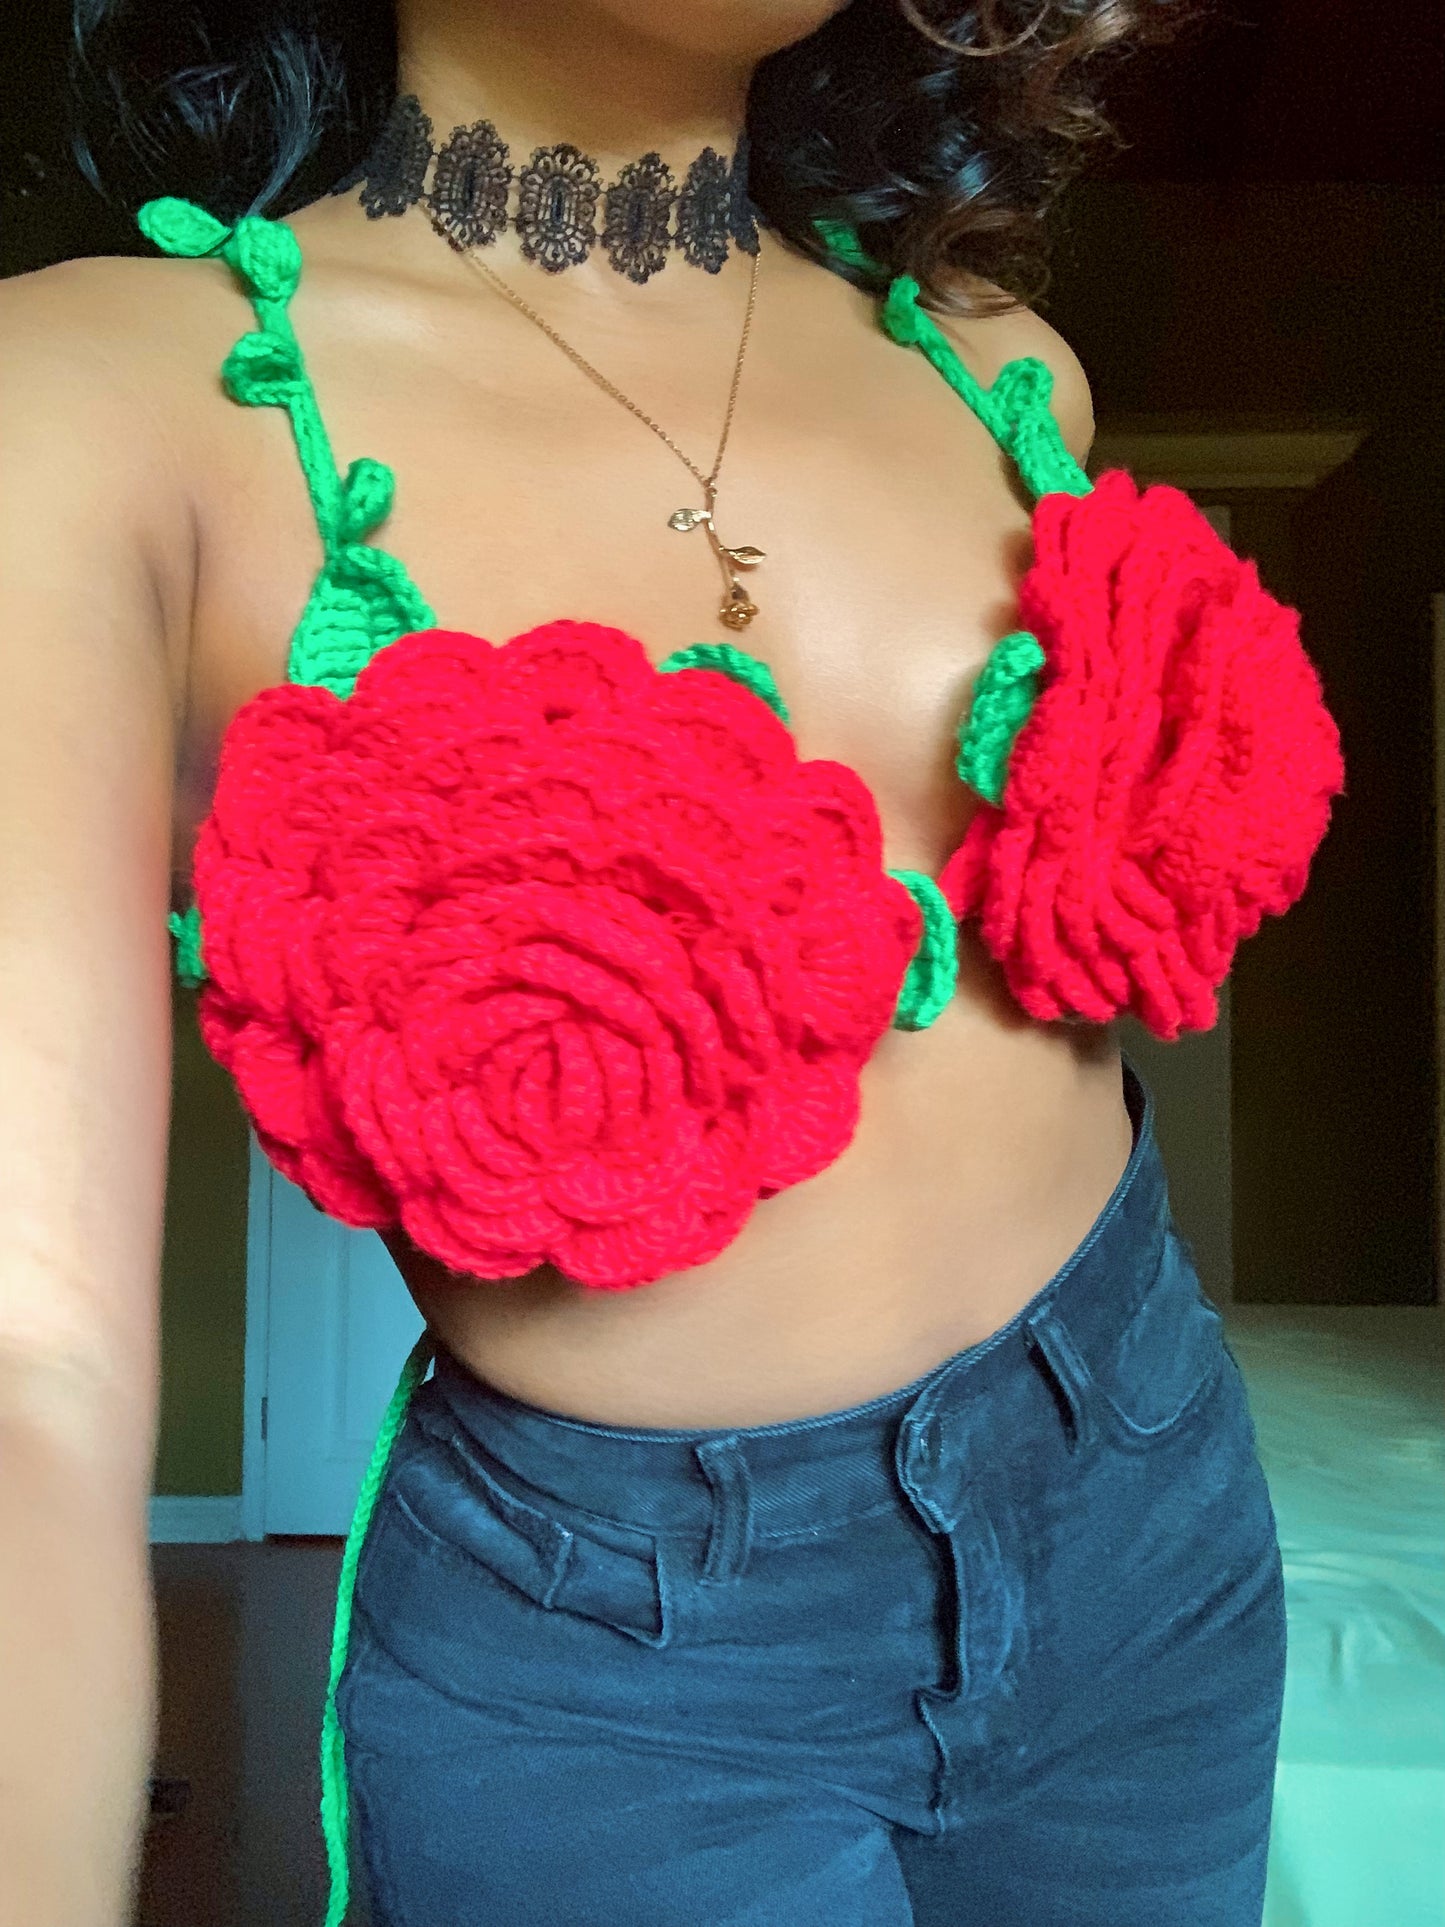 玫瑰钩针编织的胸罩